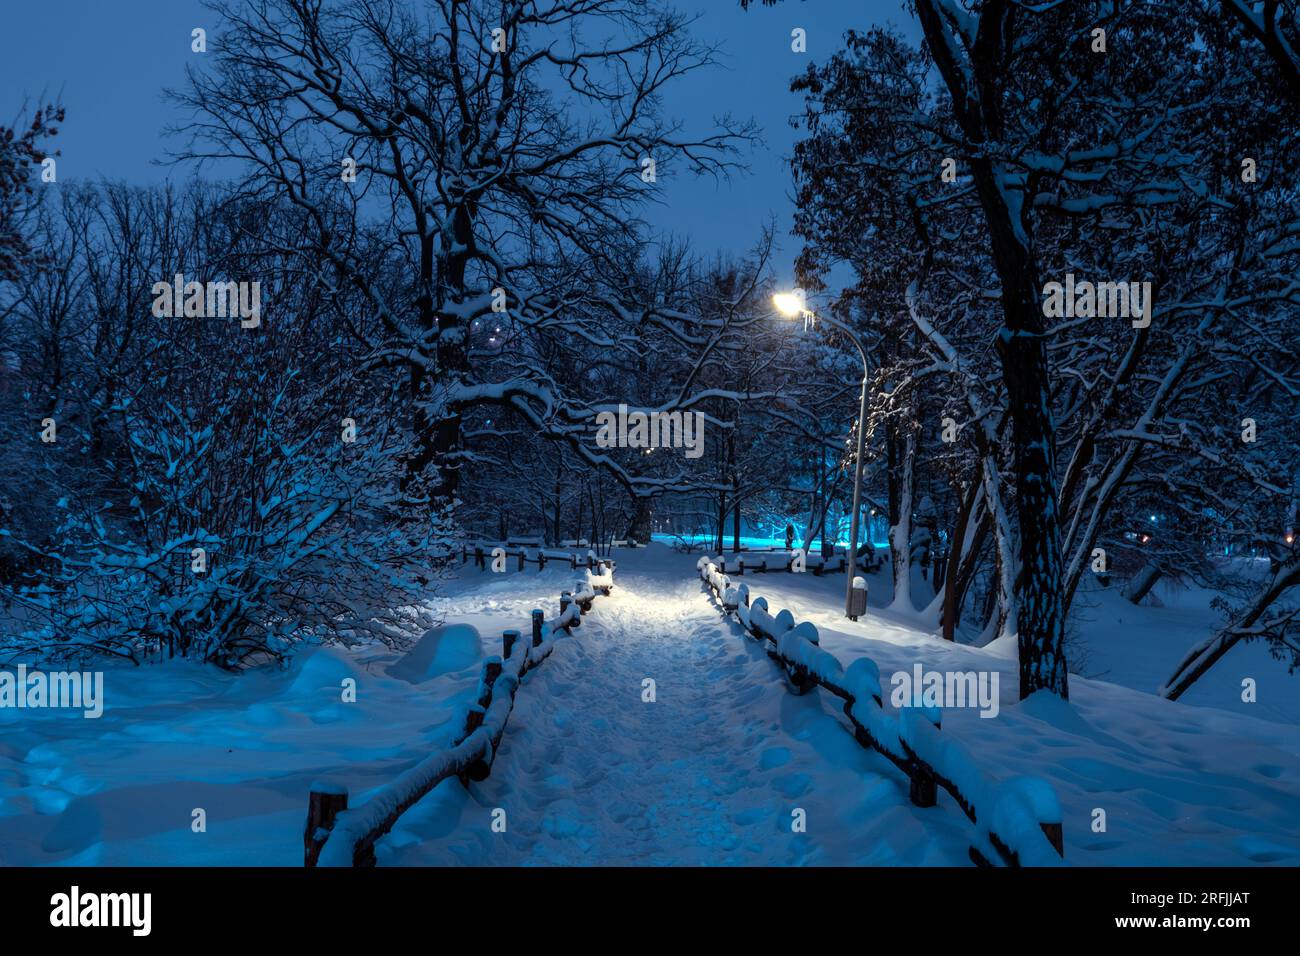 Beleuchteter Stadtpark bei Nacht. Nahaufnahme von Bank und Laterne. Schneebedeckte Bäume nach einem Schneesturm. Dunkle, stimmungsvolle Winterlandschaft Stockfoto